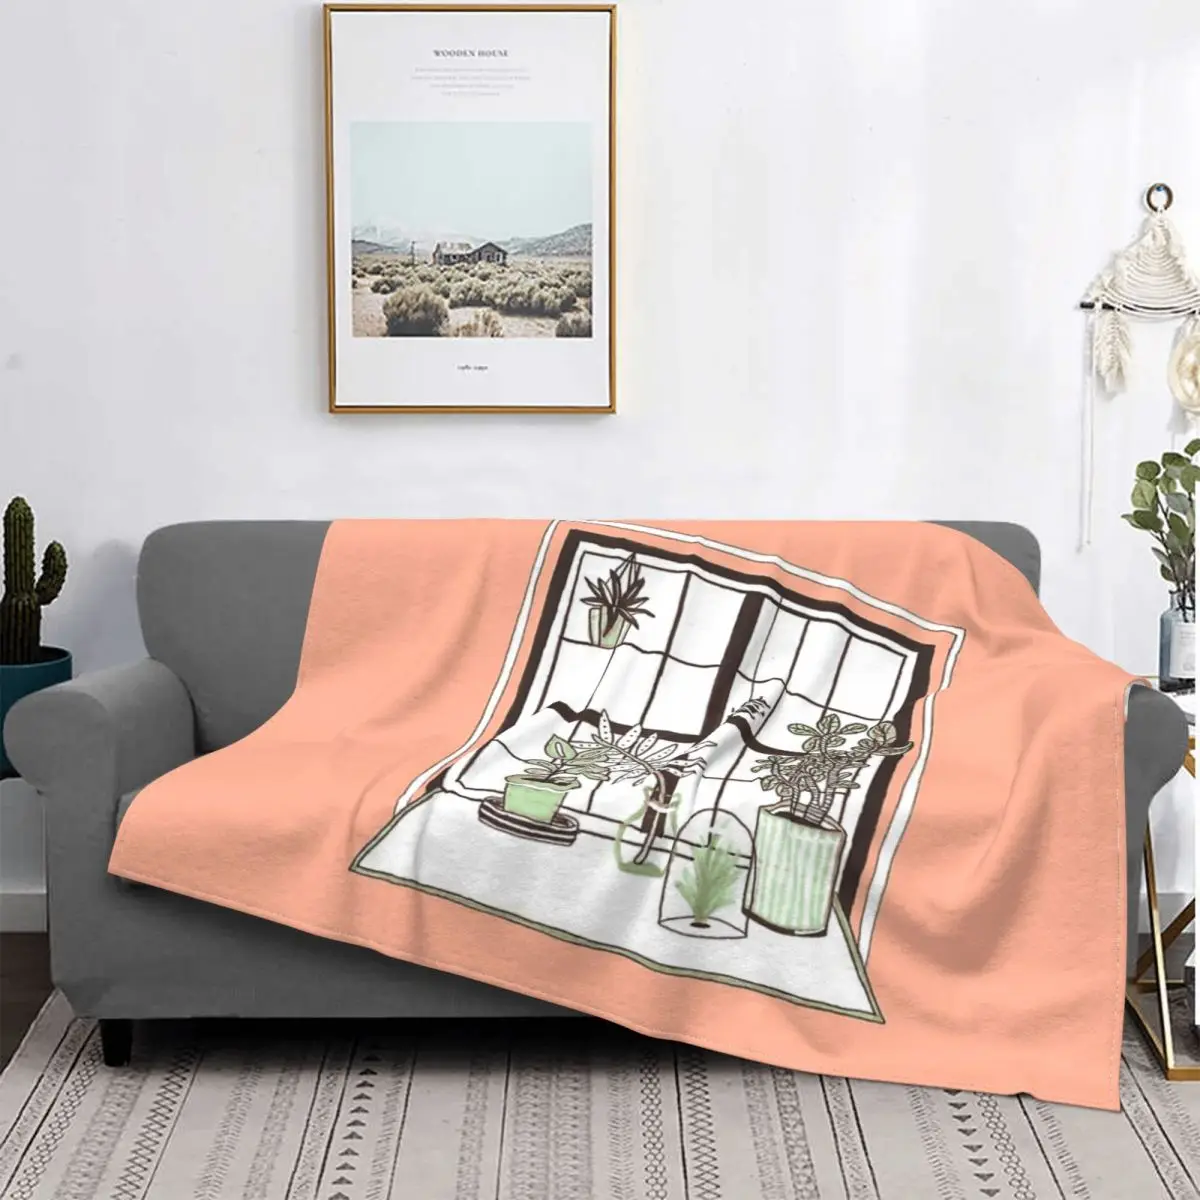  Растительное оконное одеяло Покрывало на кровати Мягкие покрывала Эстетические декоративные диванные одеяла